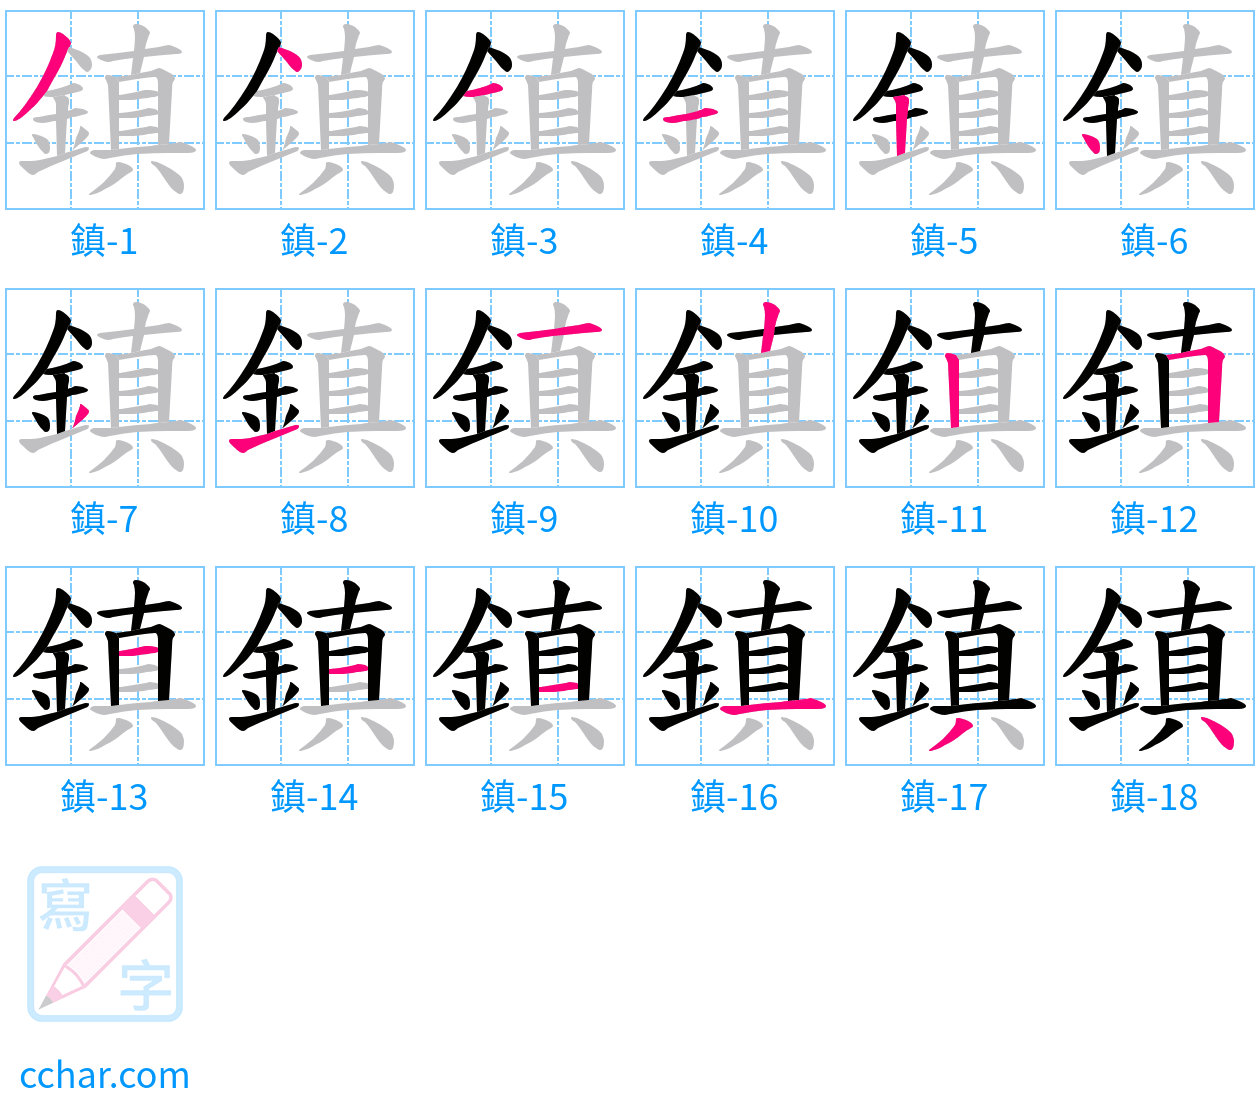 鎮 stroke order step-by-step diagram